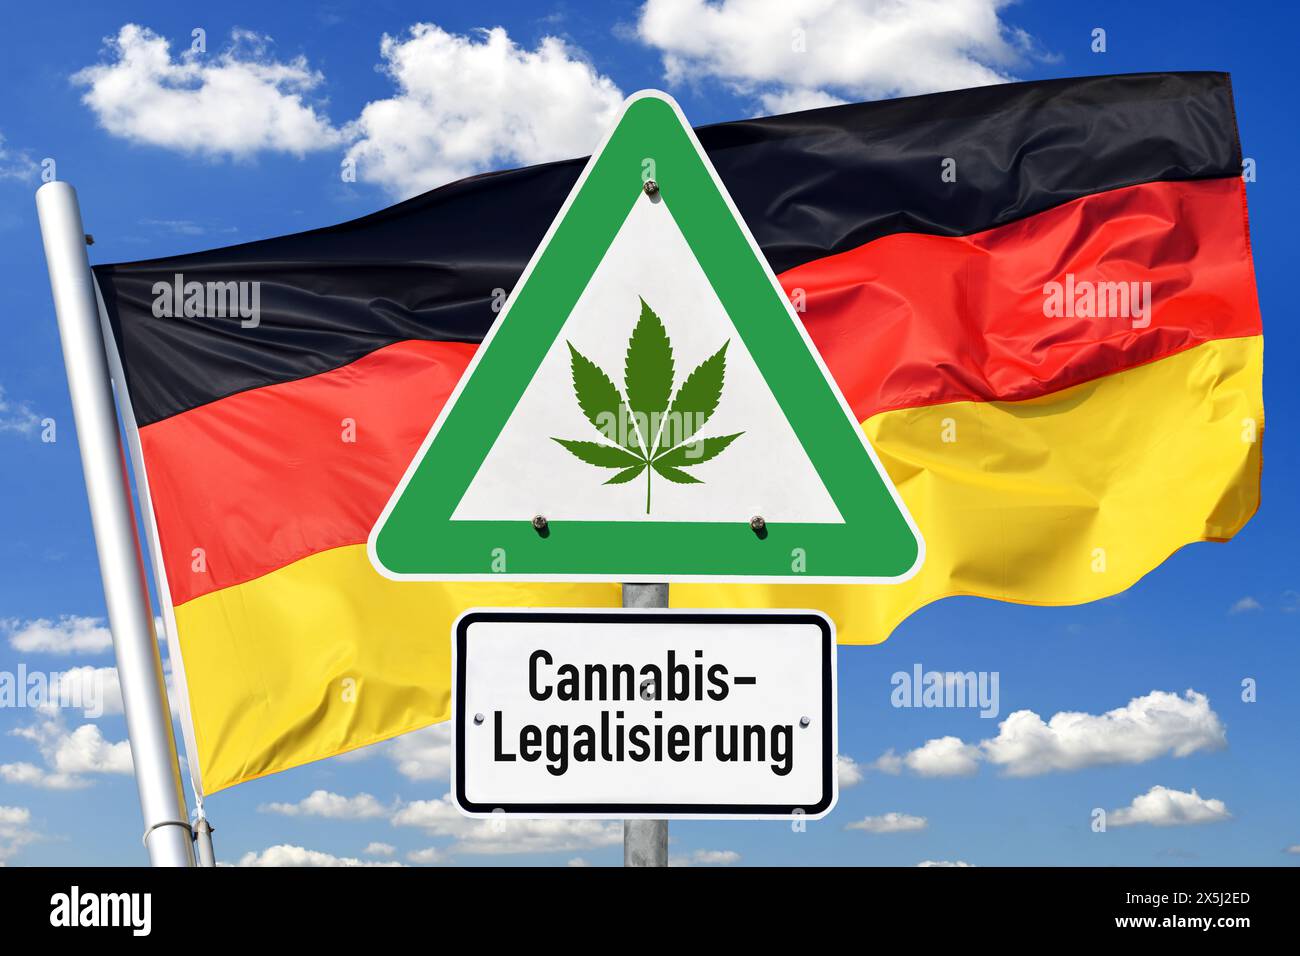 FOTOMONTAGE, Schild mit Cannabis-Blatt und Aufschrift Cannabis-Legalisierung vor Deutschlandfahne Foto Stock